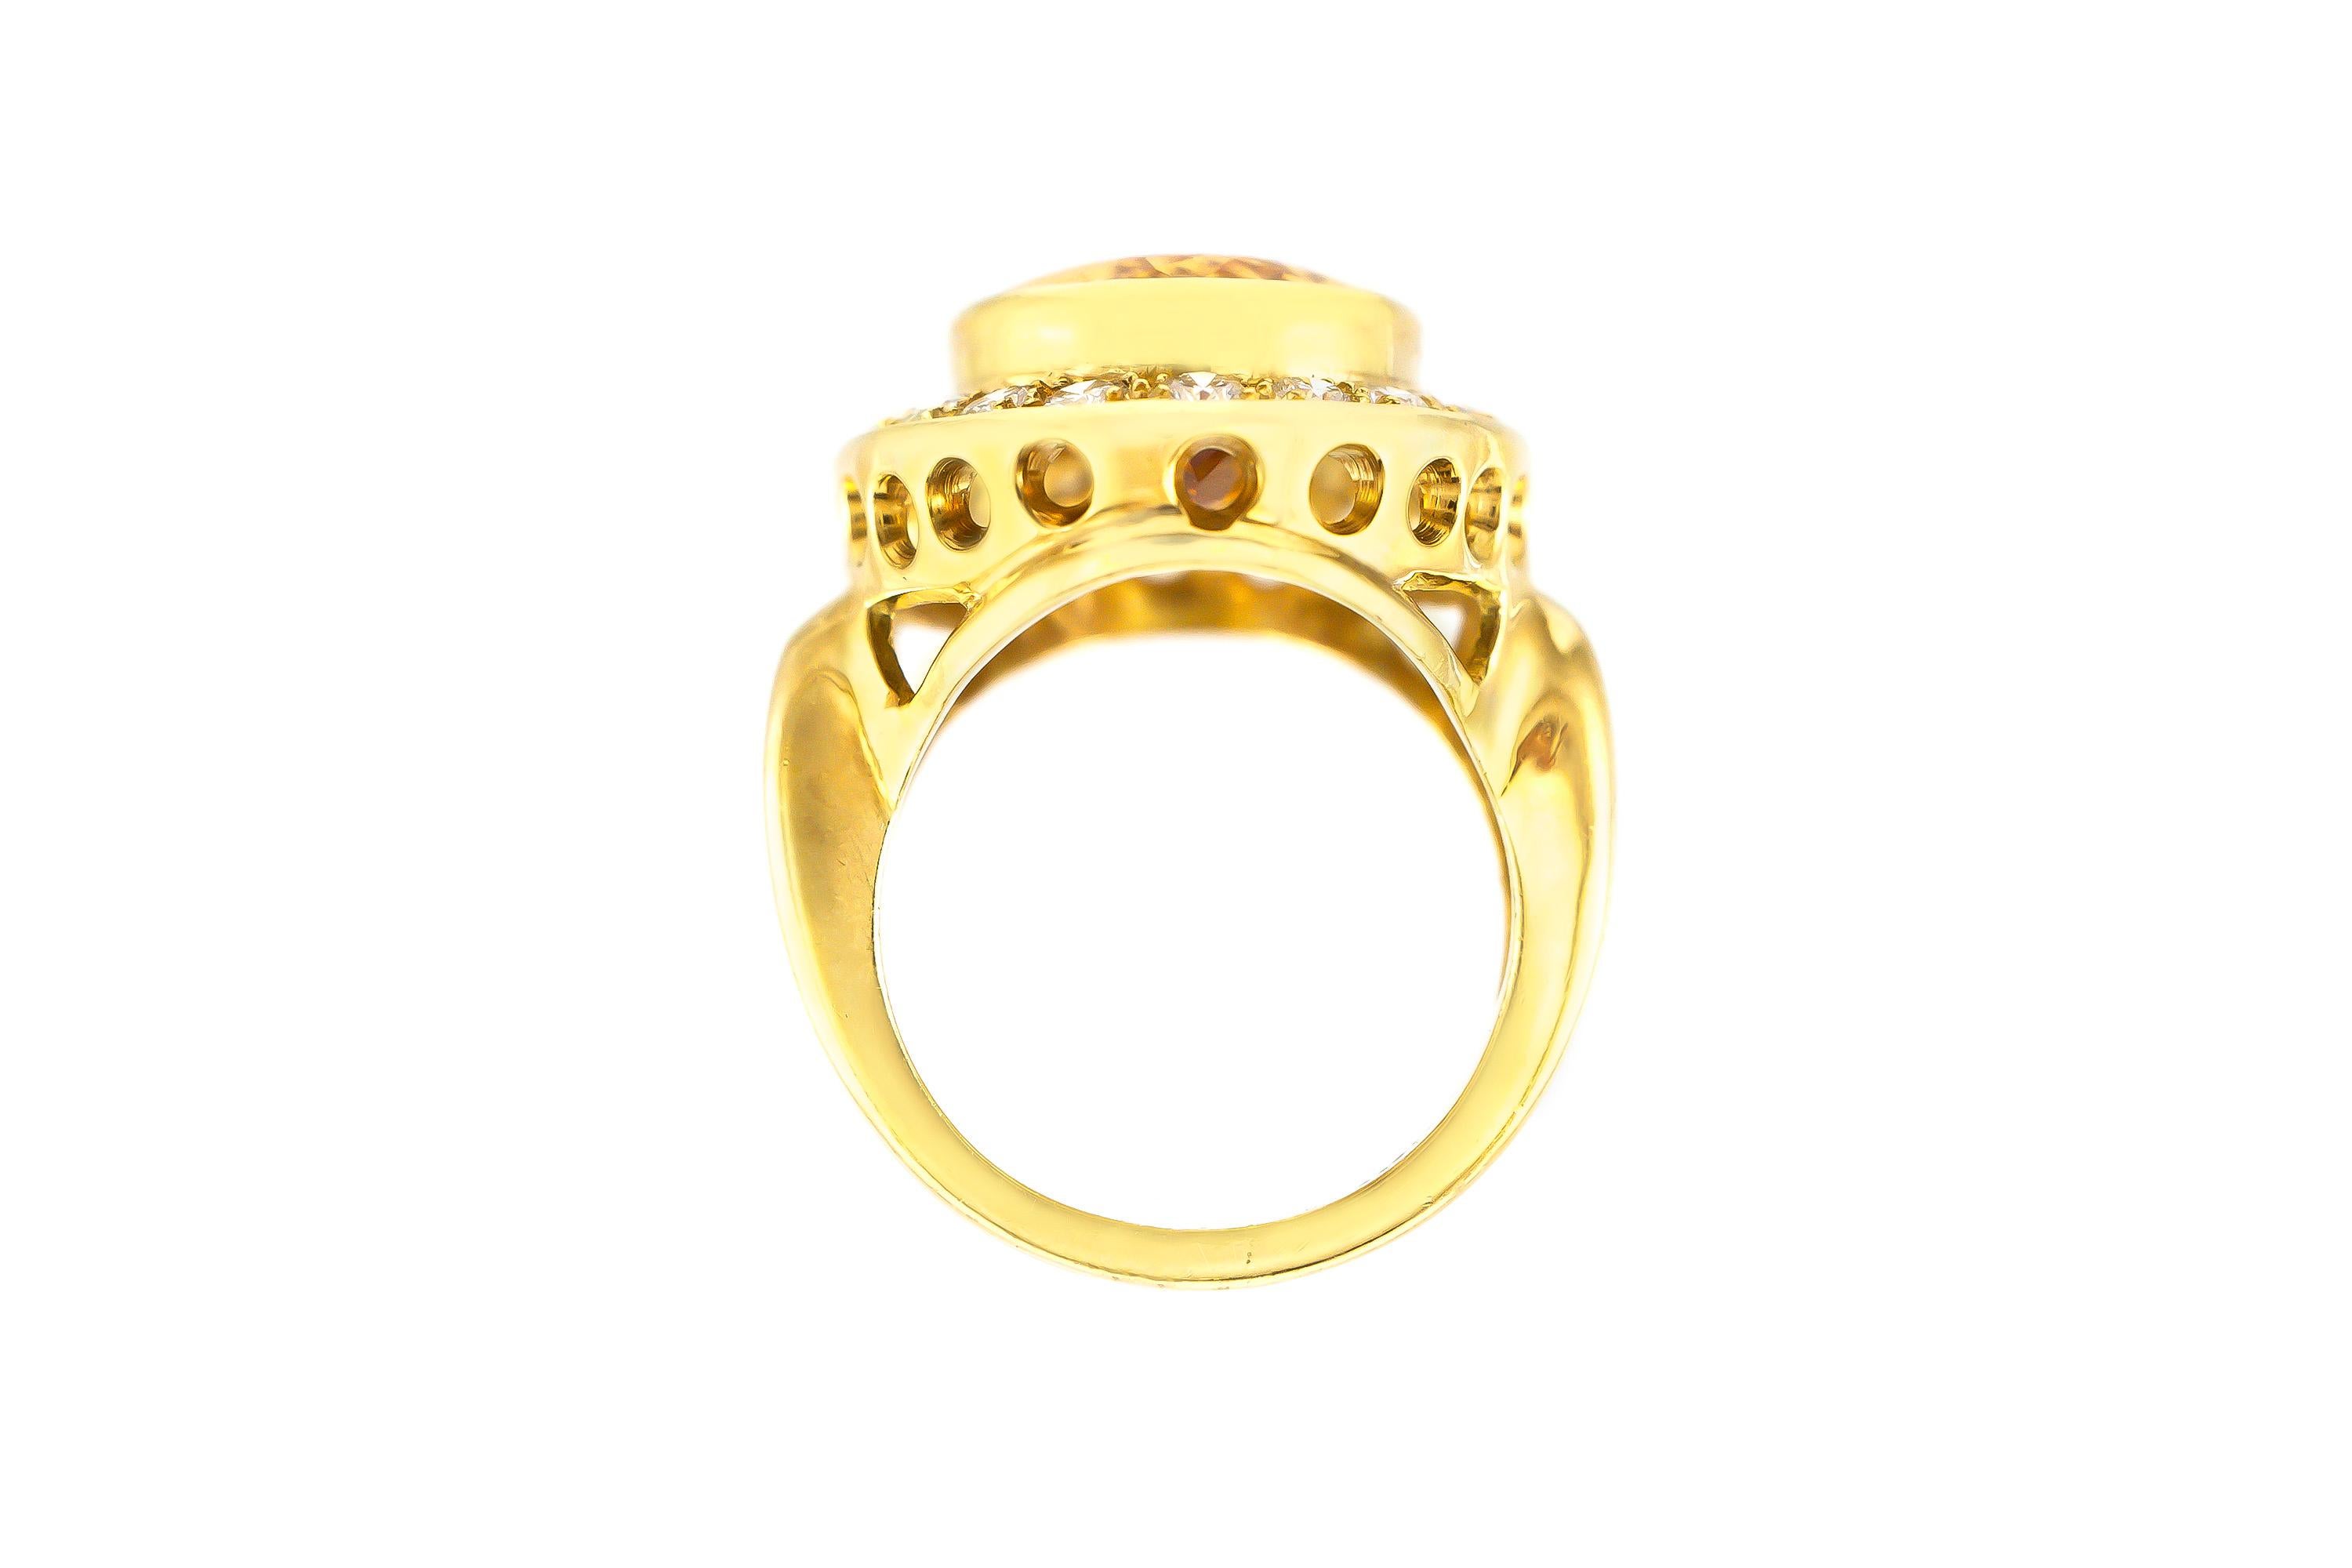 Der Ring ist fein in Handarbeit in 18k Gelbgold mit Citrin 8,00 Karat als Mittelstein und Diamanten um, dass das Gewicht etwa insgesamt 1,60 Karat.
Um 1940.
